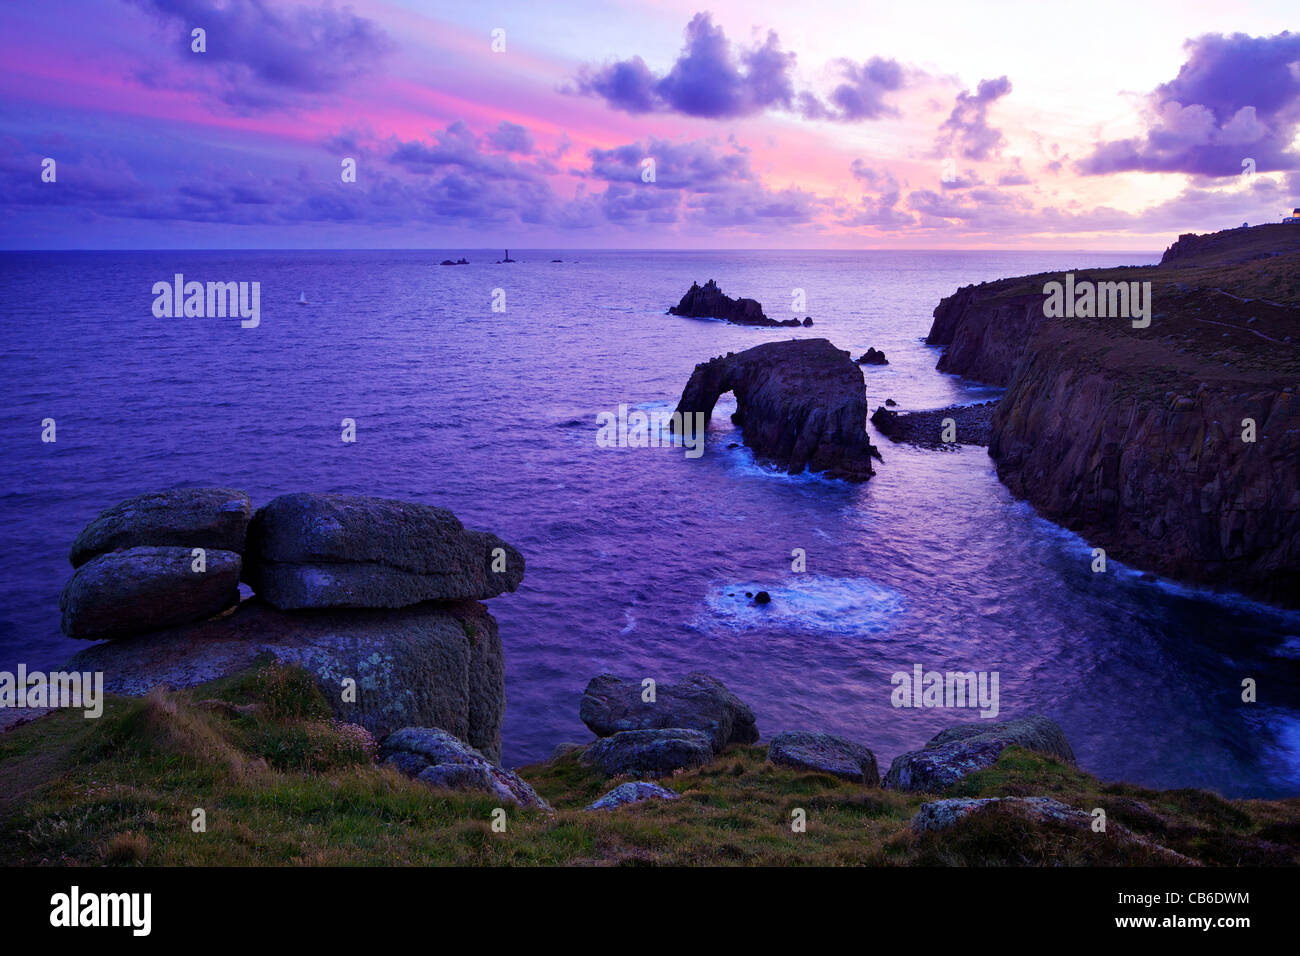 Estate tramonto a Lands End penisola, Cornwall, Sud Ovest Inghilterra, GB Gran Bretagna, UK, Regno Unito, Isole britanniche, Europa Foto Stock